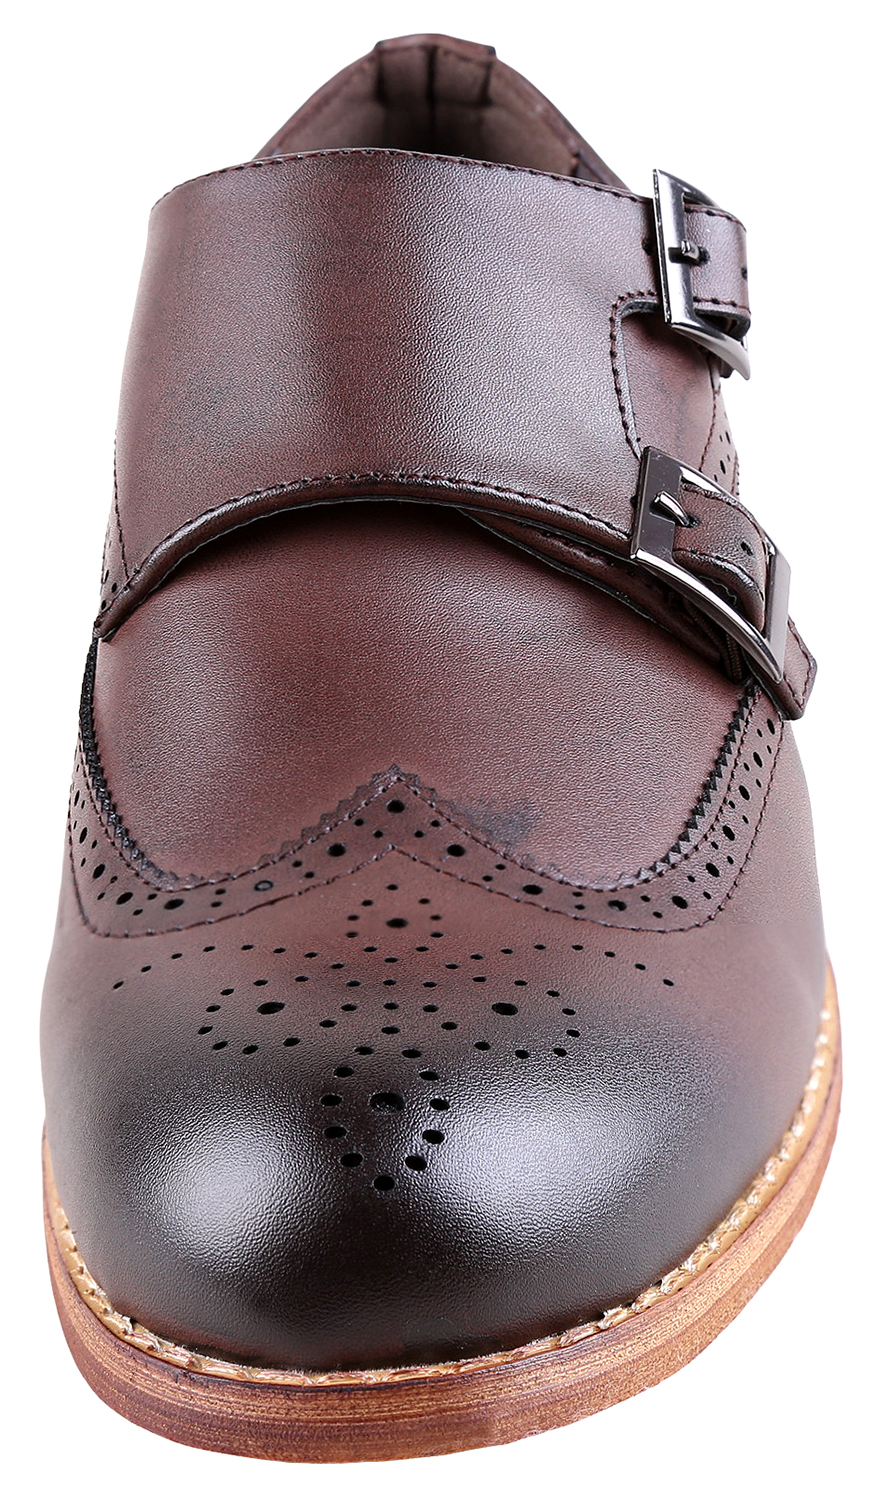 Urban Fox Allen Men's Dress Shoe | Double Monk Strap | Brogue | Wingtip Shoes for Men | Dark Brown 14 M US - image 3 of 7